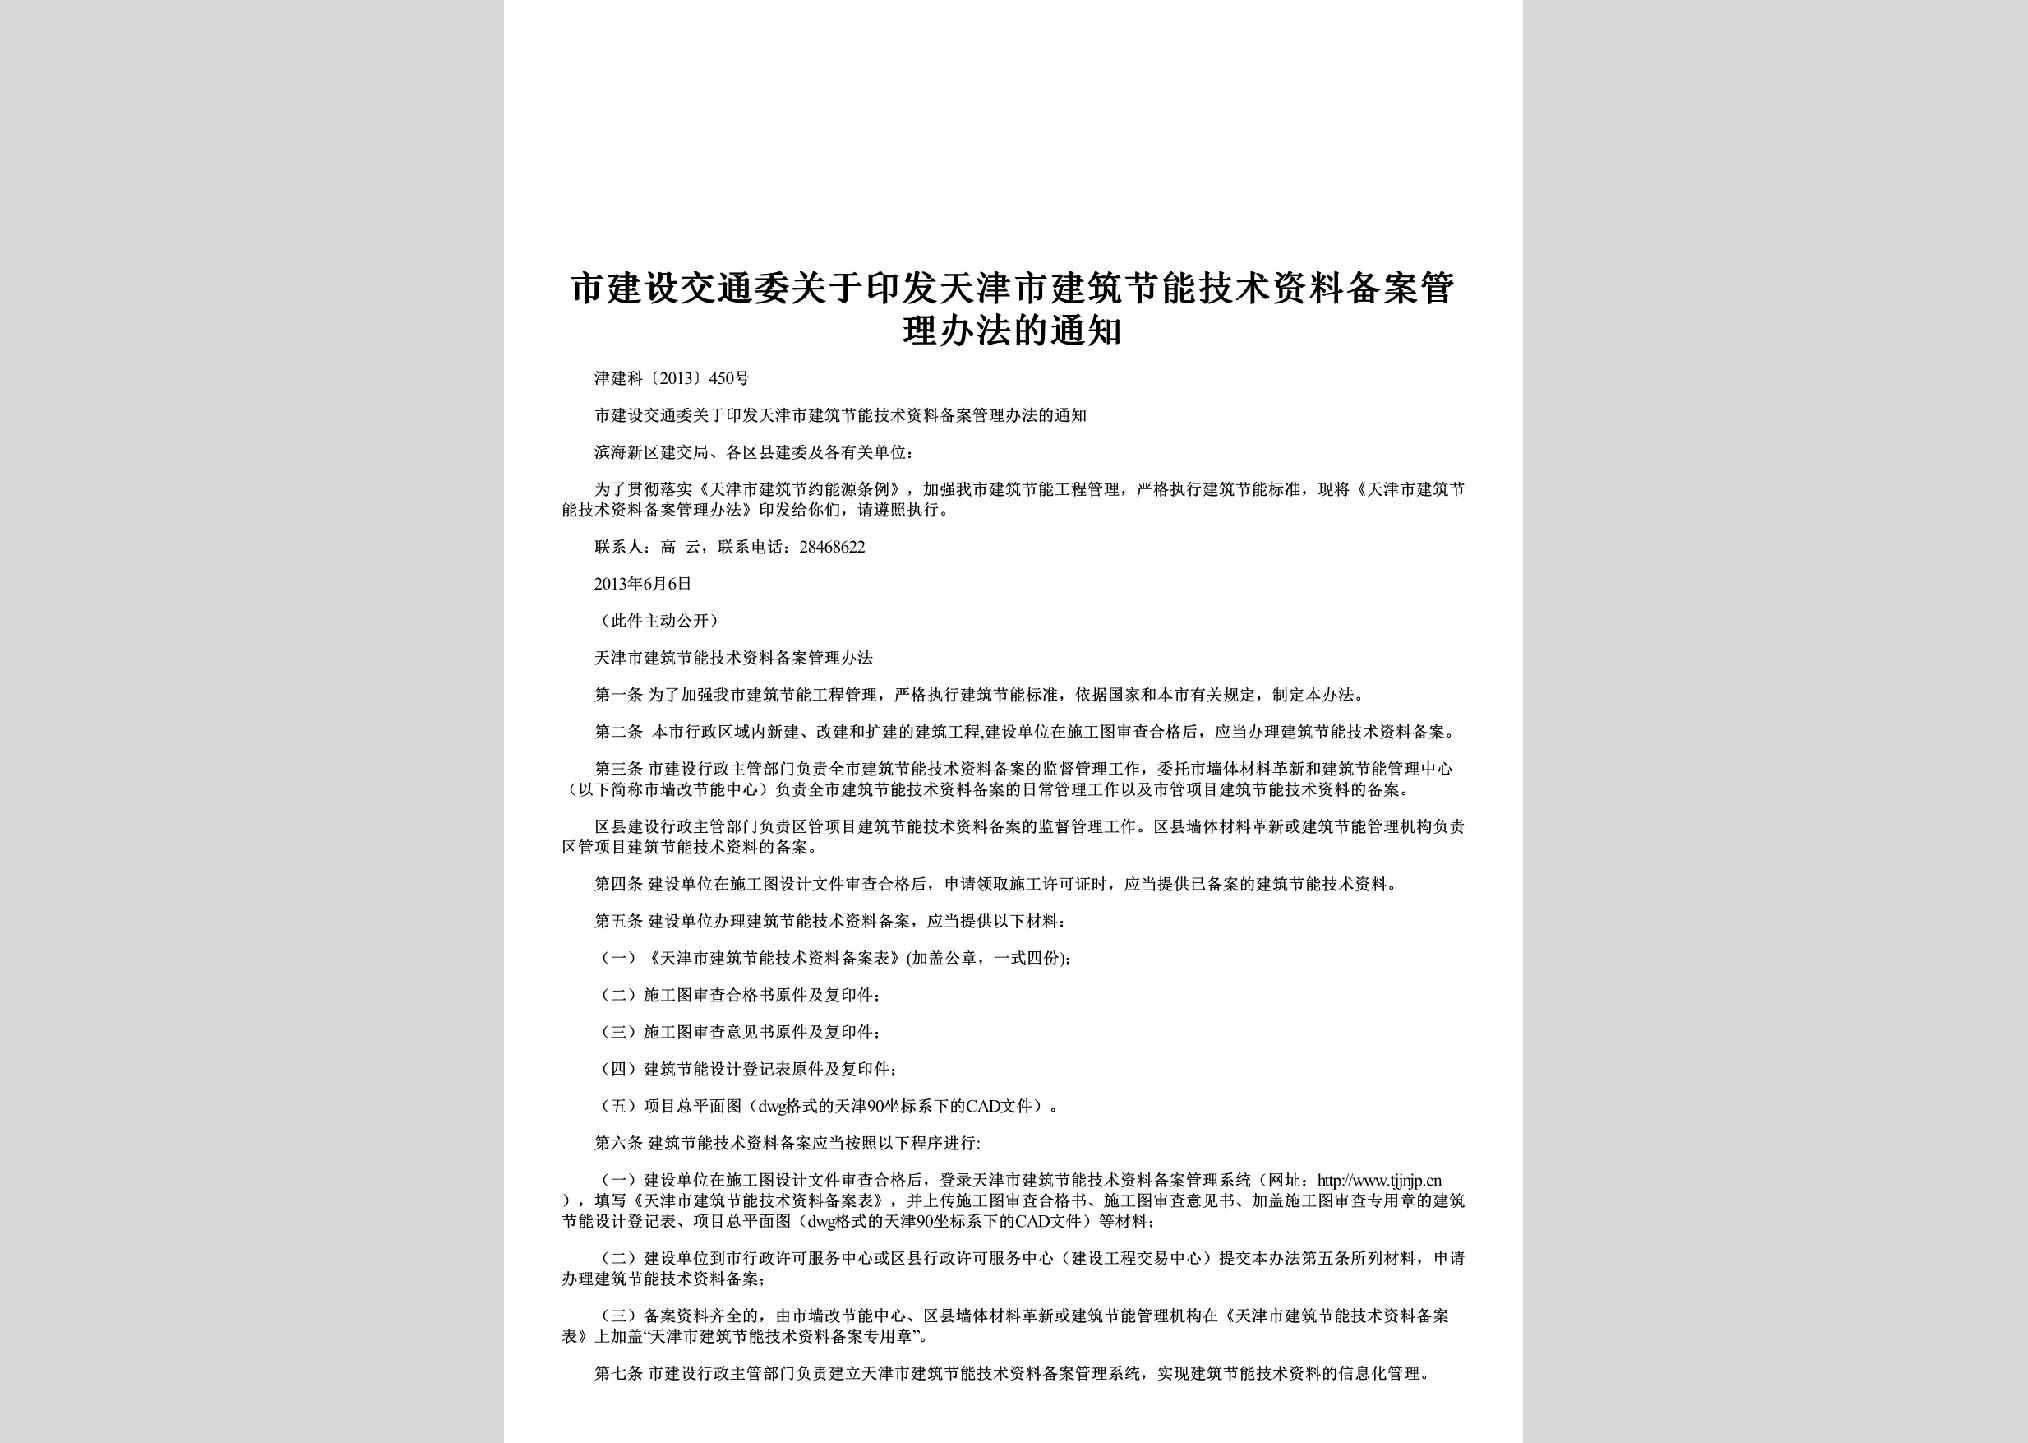 津建科[2013]450号：关于印发天津市建筑节能技术资料备案管理办法的通知